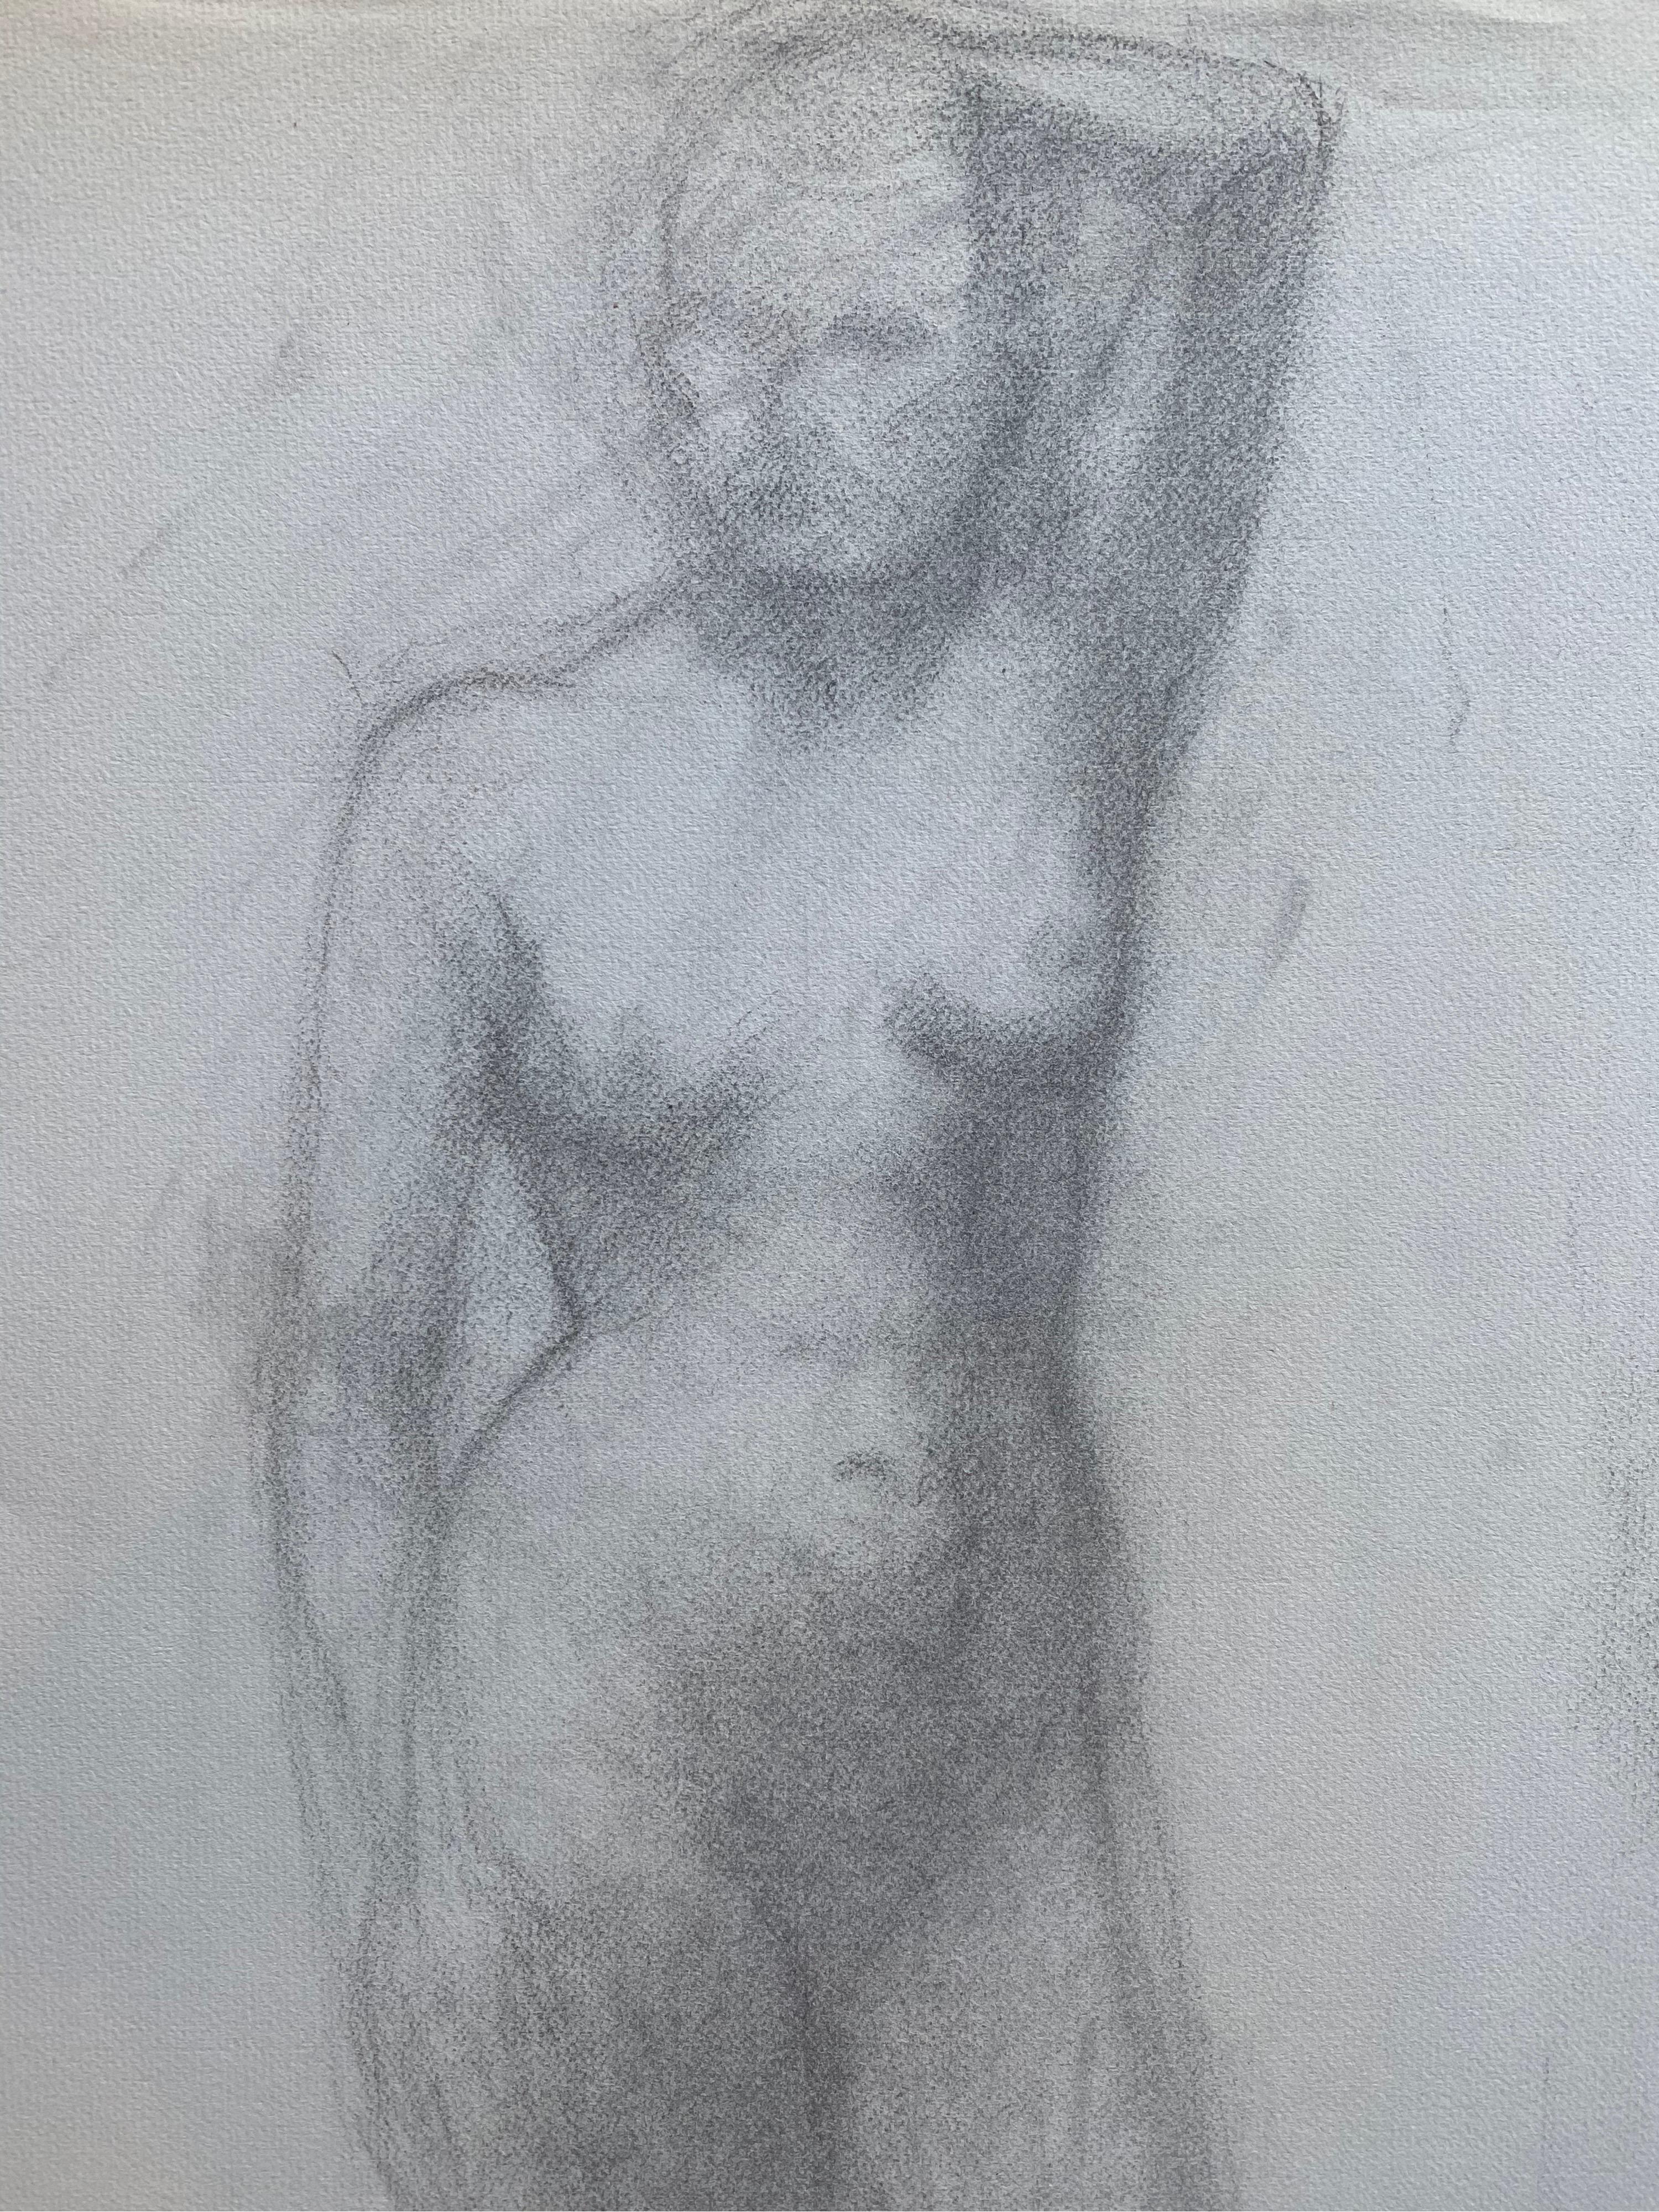 Französische Kohlezeichnung aus der Mitte des 20. Jahrhunderts – Porträt einer stehenden nackten Frau